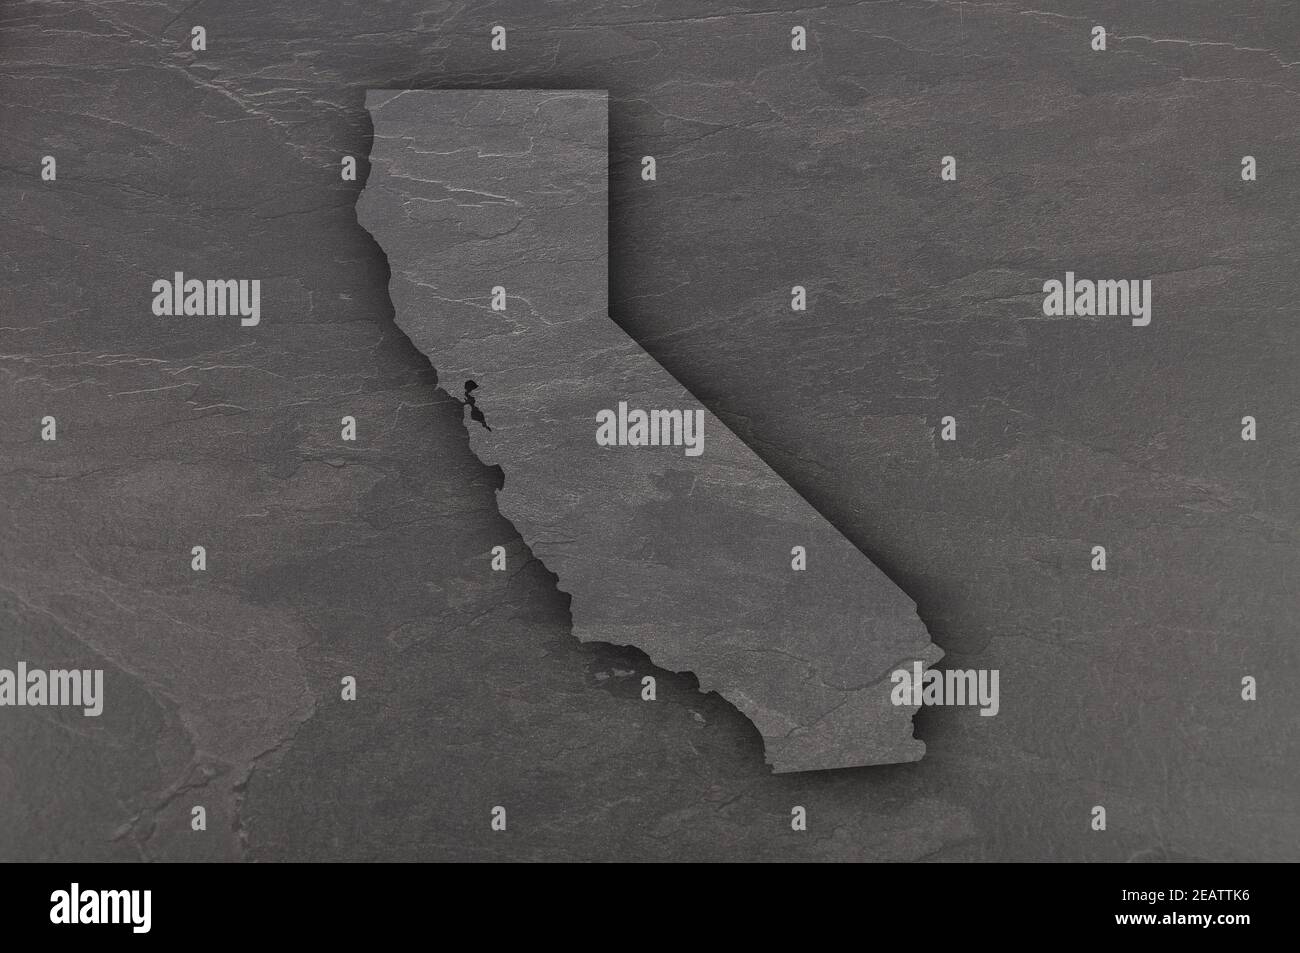 Mapa de California sobre pizarra oscura Foto de stock